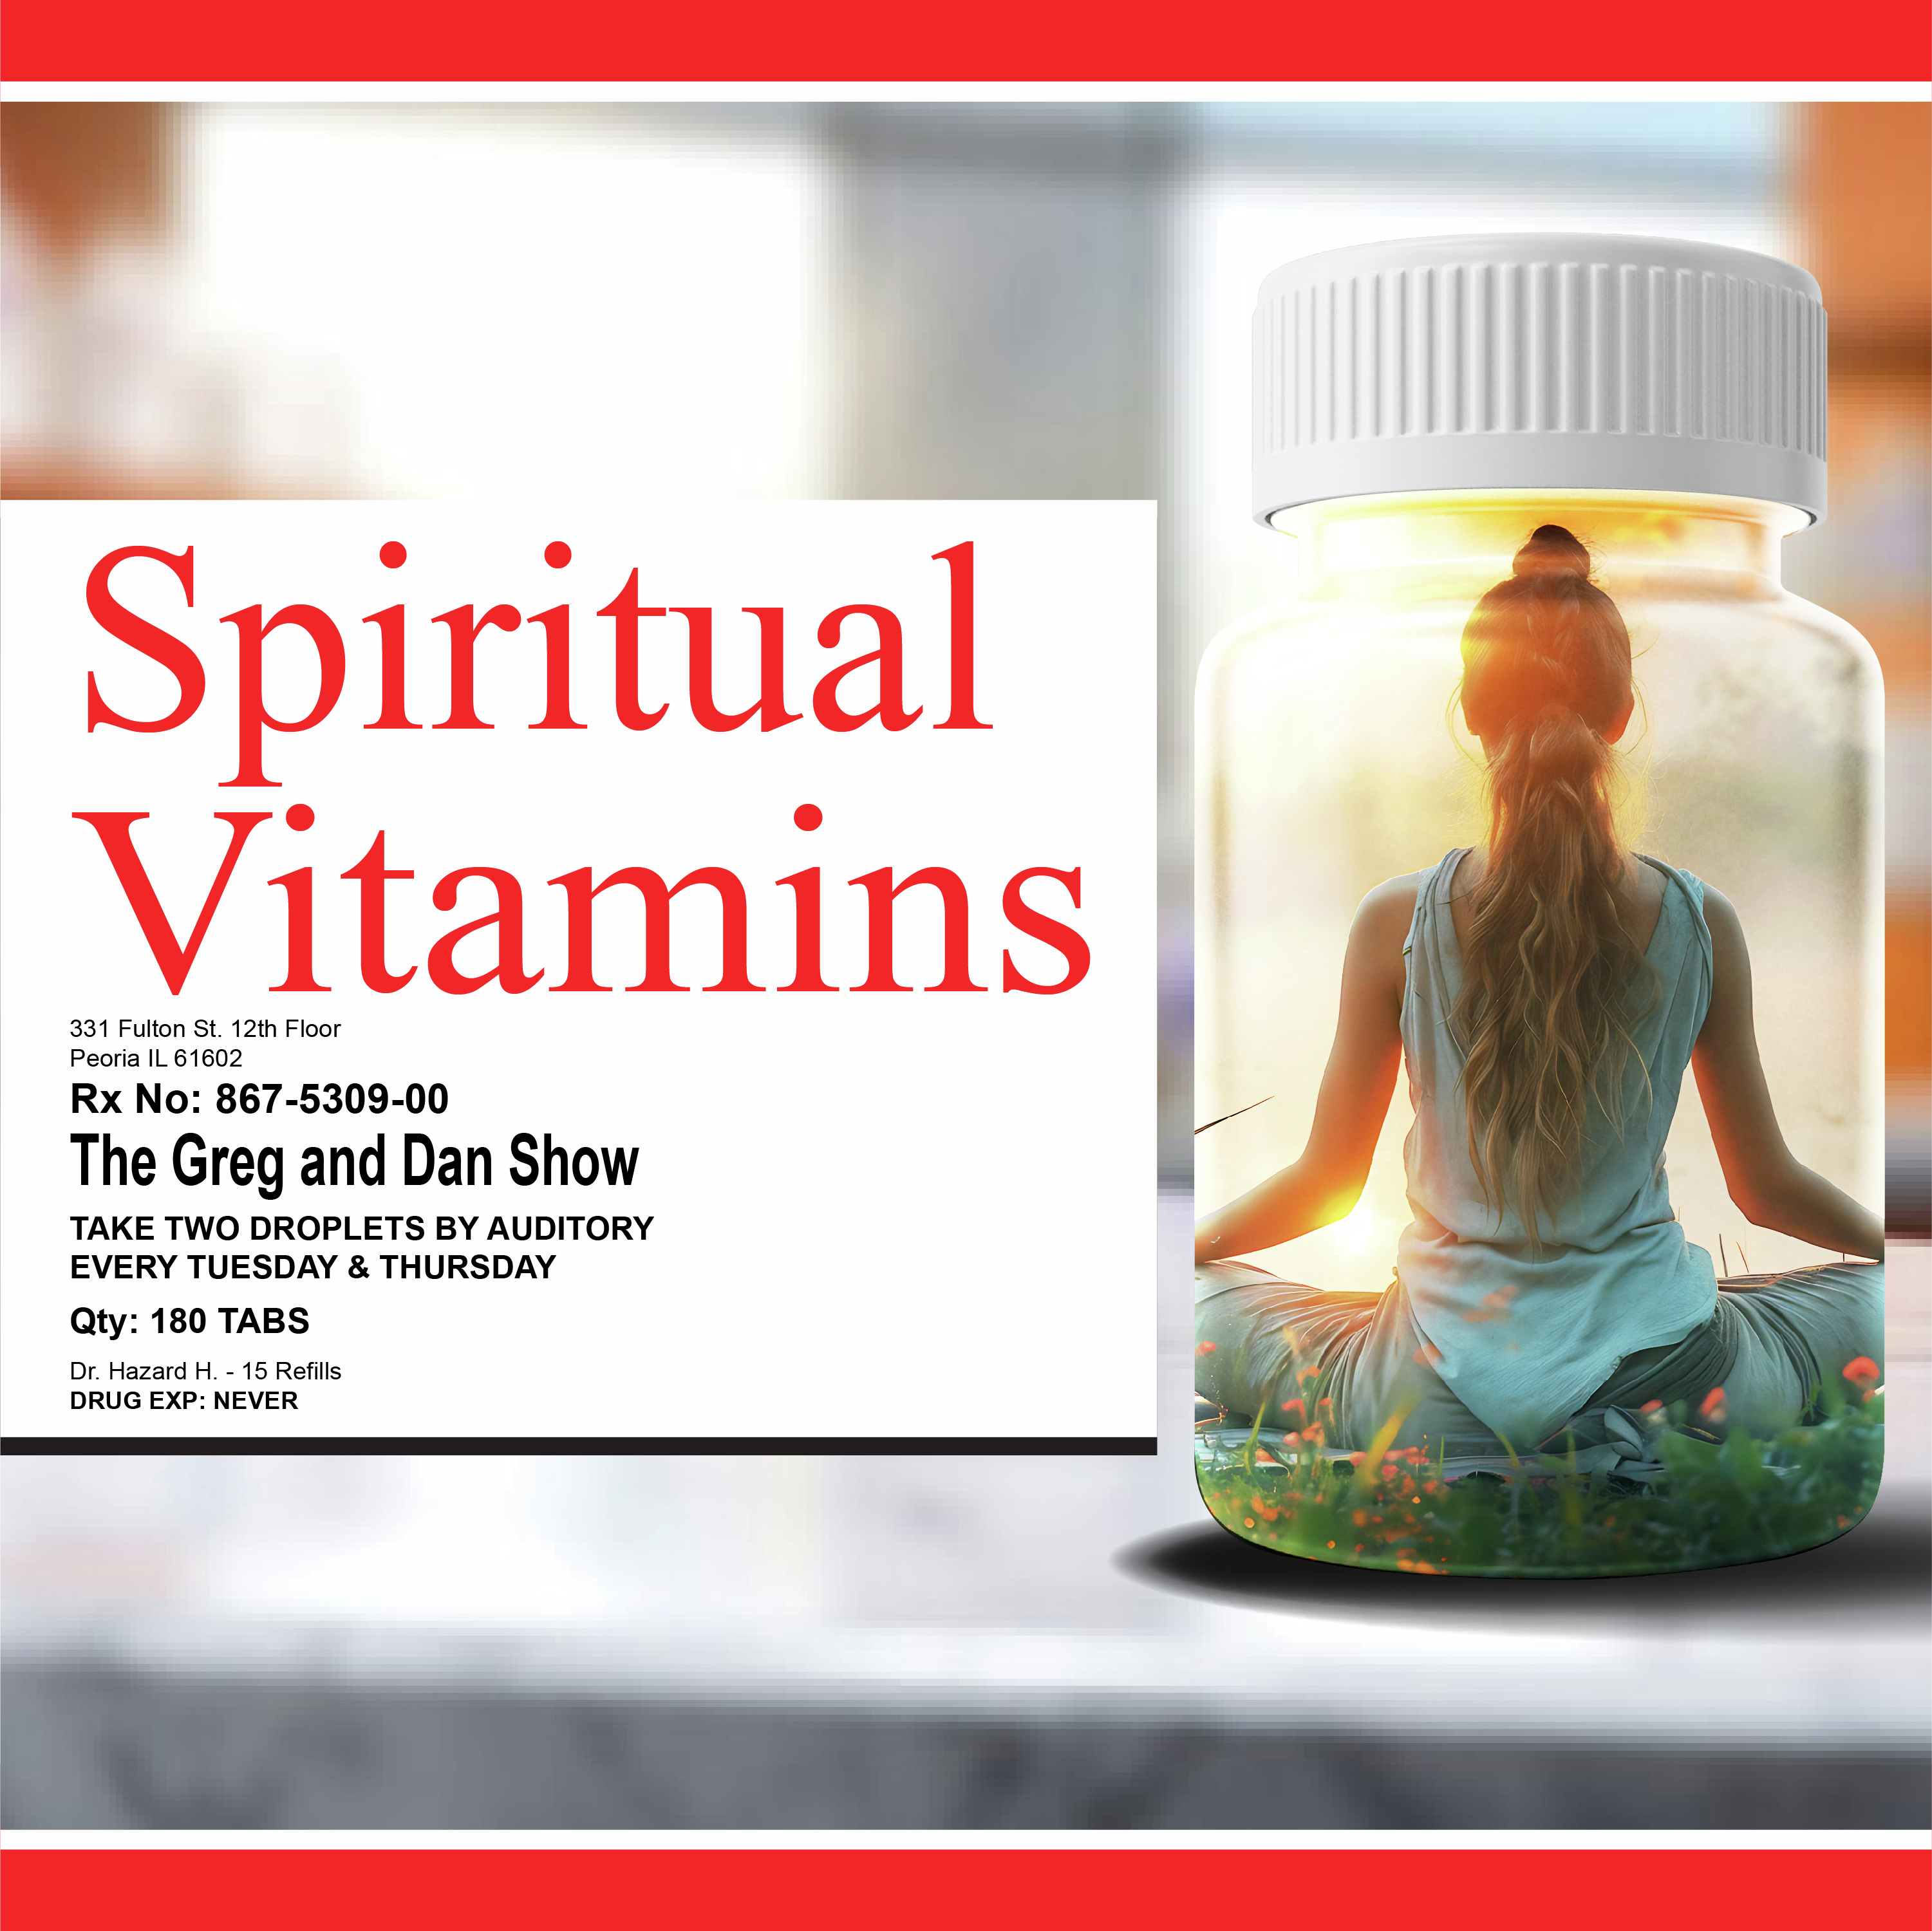 Spiritual Vitamins: One Life